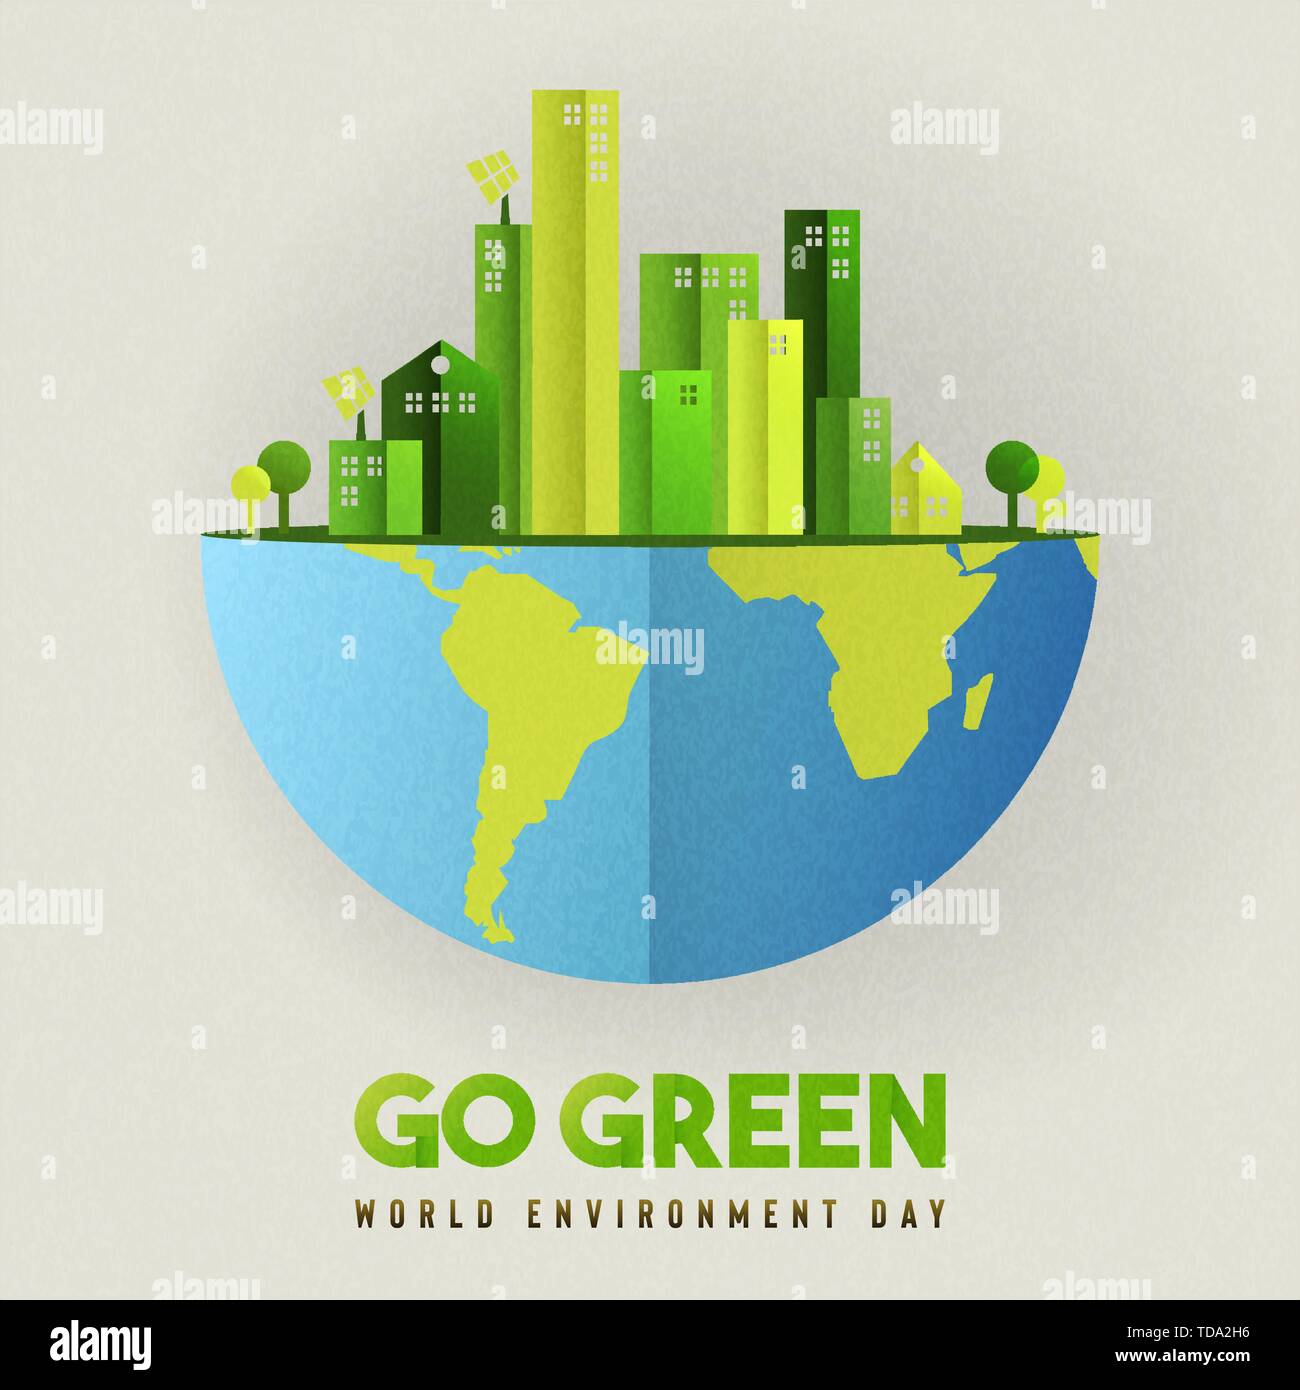 Illustration de la journée mondiale de l'environnement. Eco friendly city concept avec les bâtiments écologiques pour le mode de vie urbain. Illustration de Vecteur